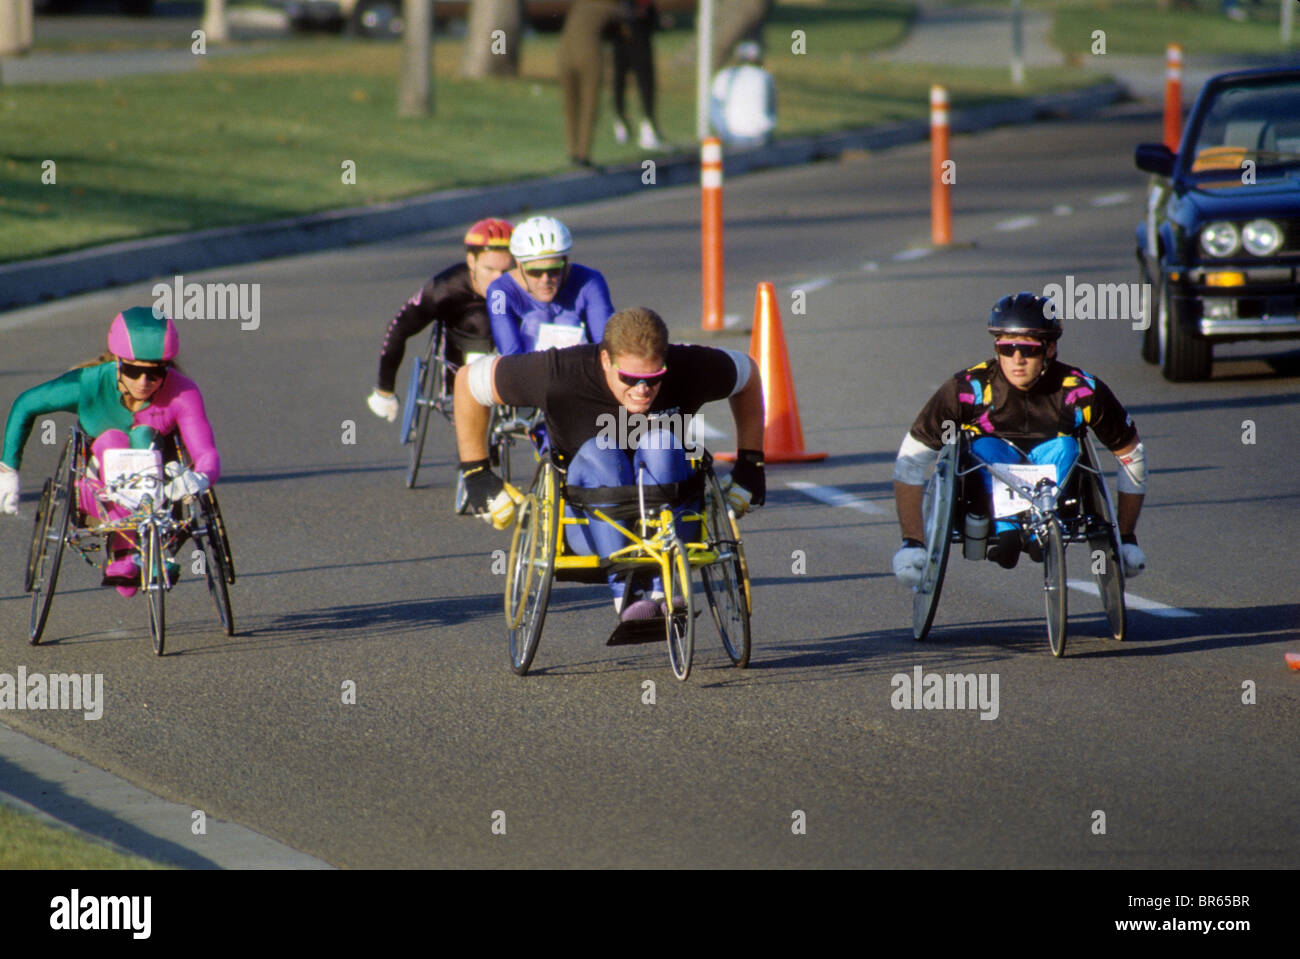 Montre de sport handicap fauteuil roulant baseball isoler à l'écart en mesure en mesure de restreindre la mobilité santé limite immobile mobile déplacer la race Banque D'Images